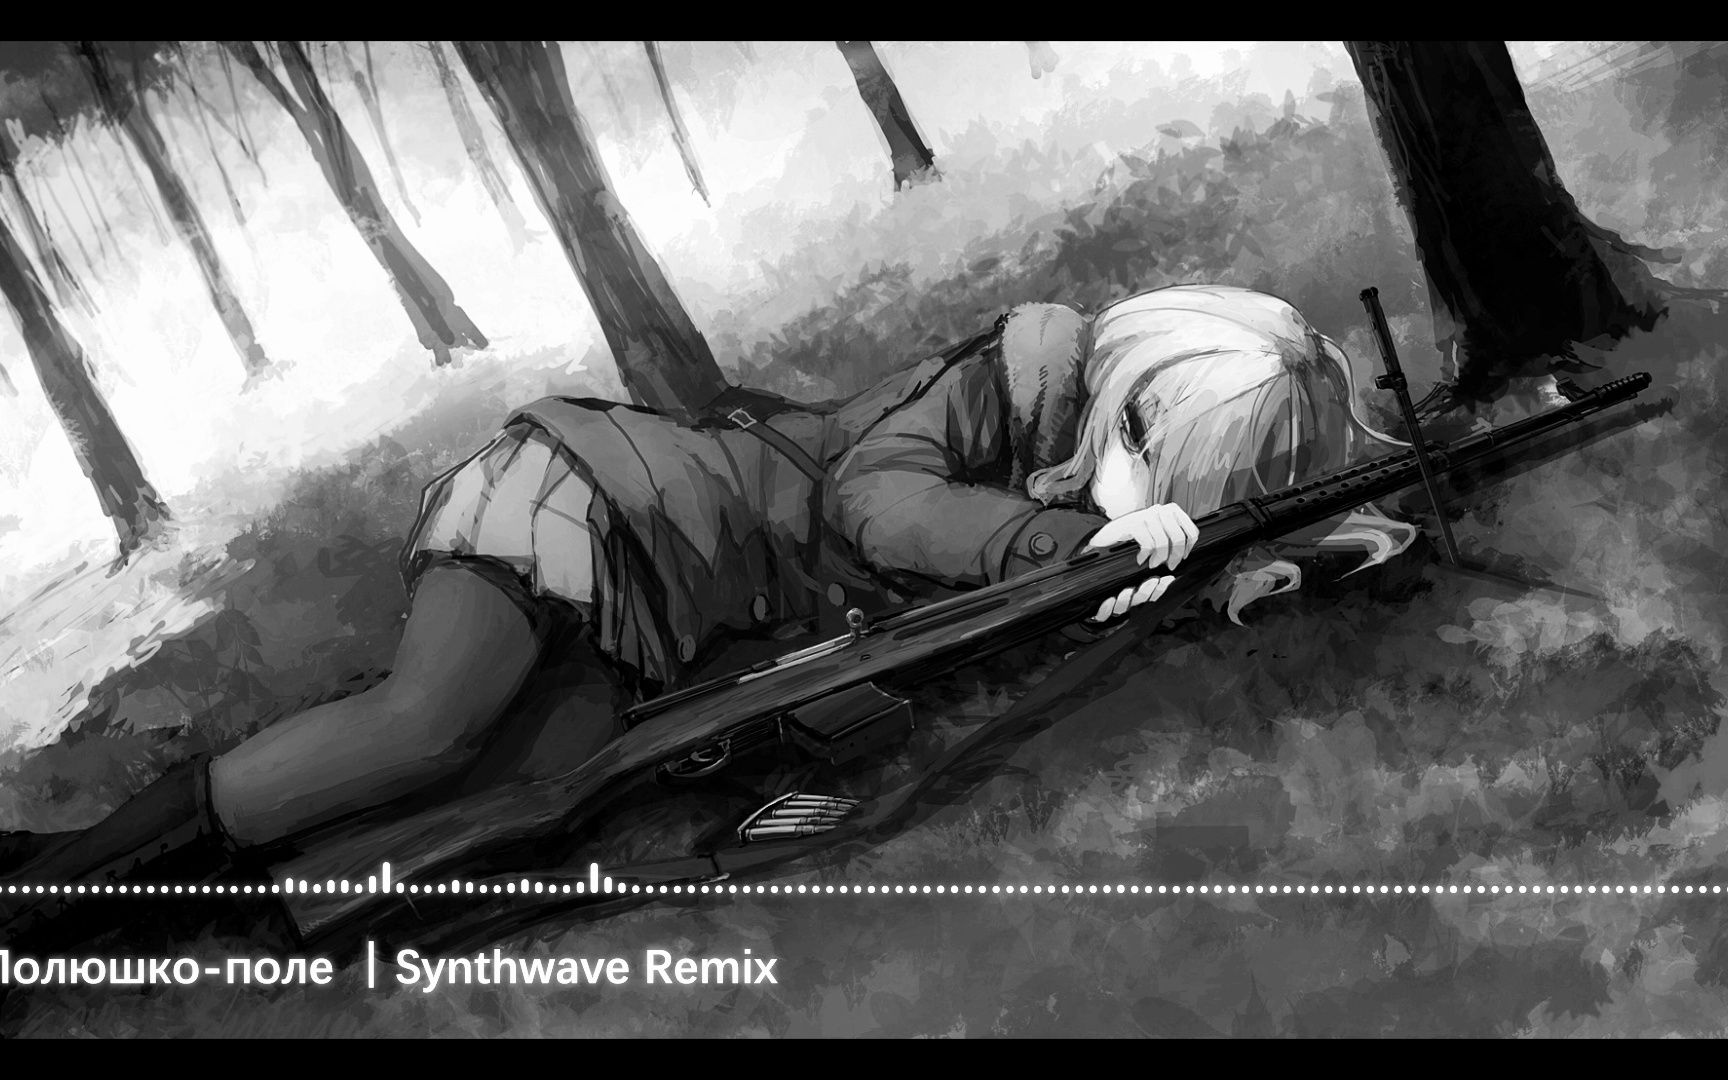 【合成器浪潮】草原啊草原 Полюшко-поле (Synthwave remix)